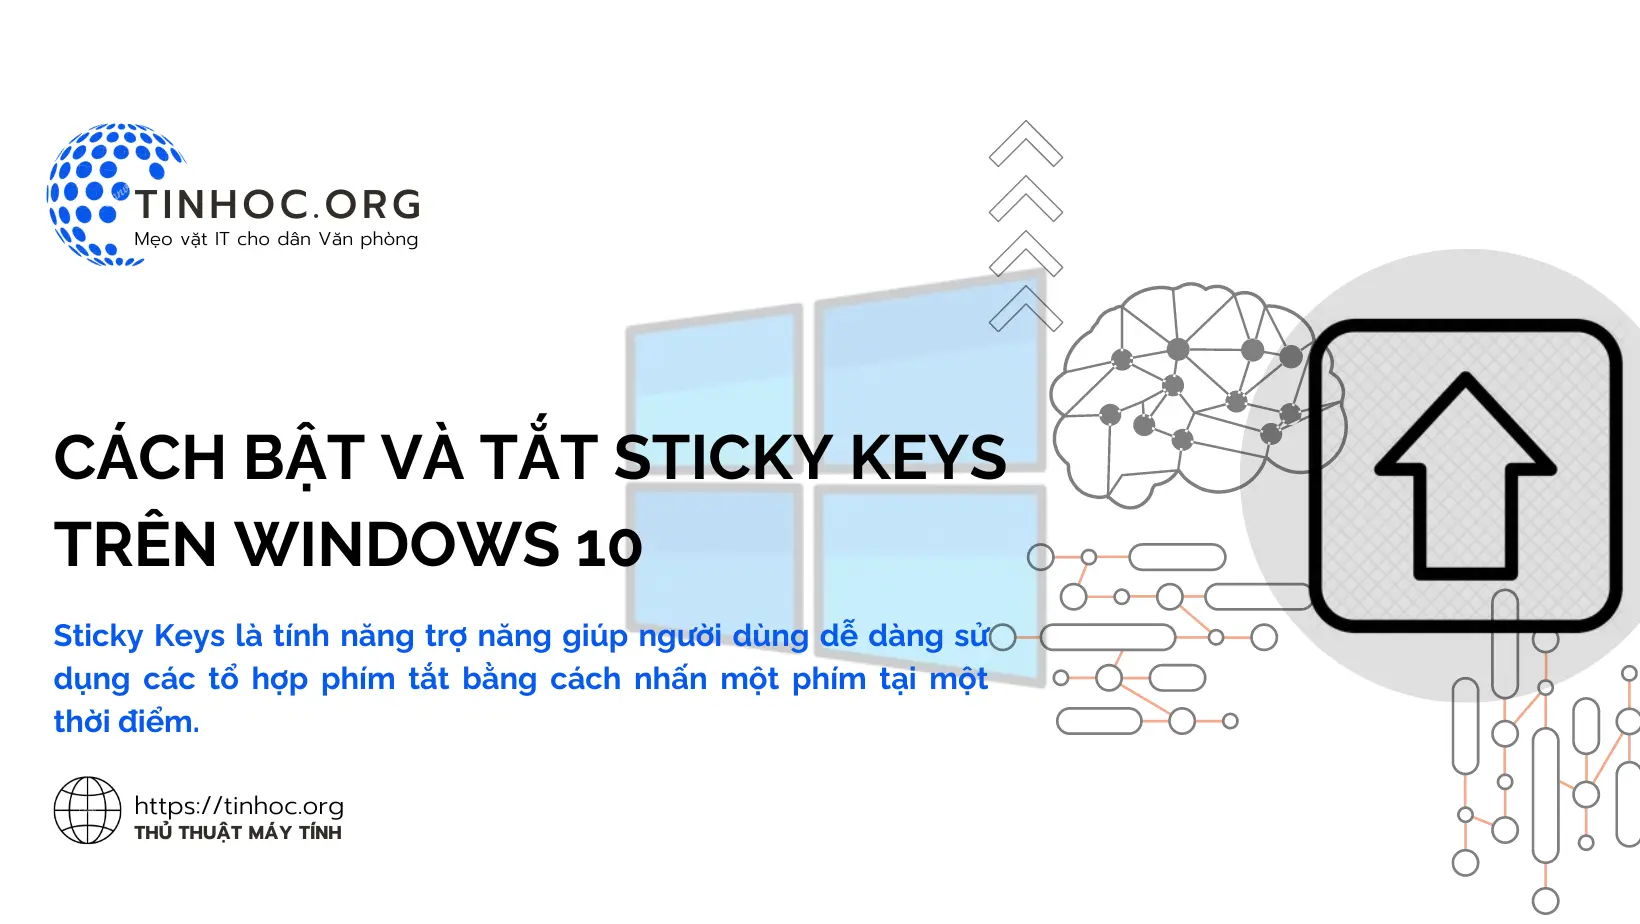 Sticky Keys là tính năng trợ năng giúp người dùng dễ dàng sử dụng các tổ hợp phím tắt bằng cách nhấn một phím tại một thời điểm.